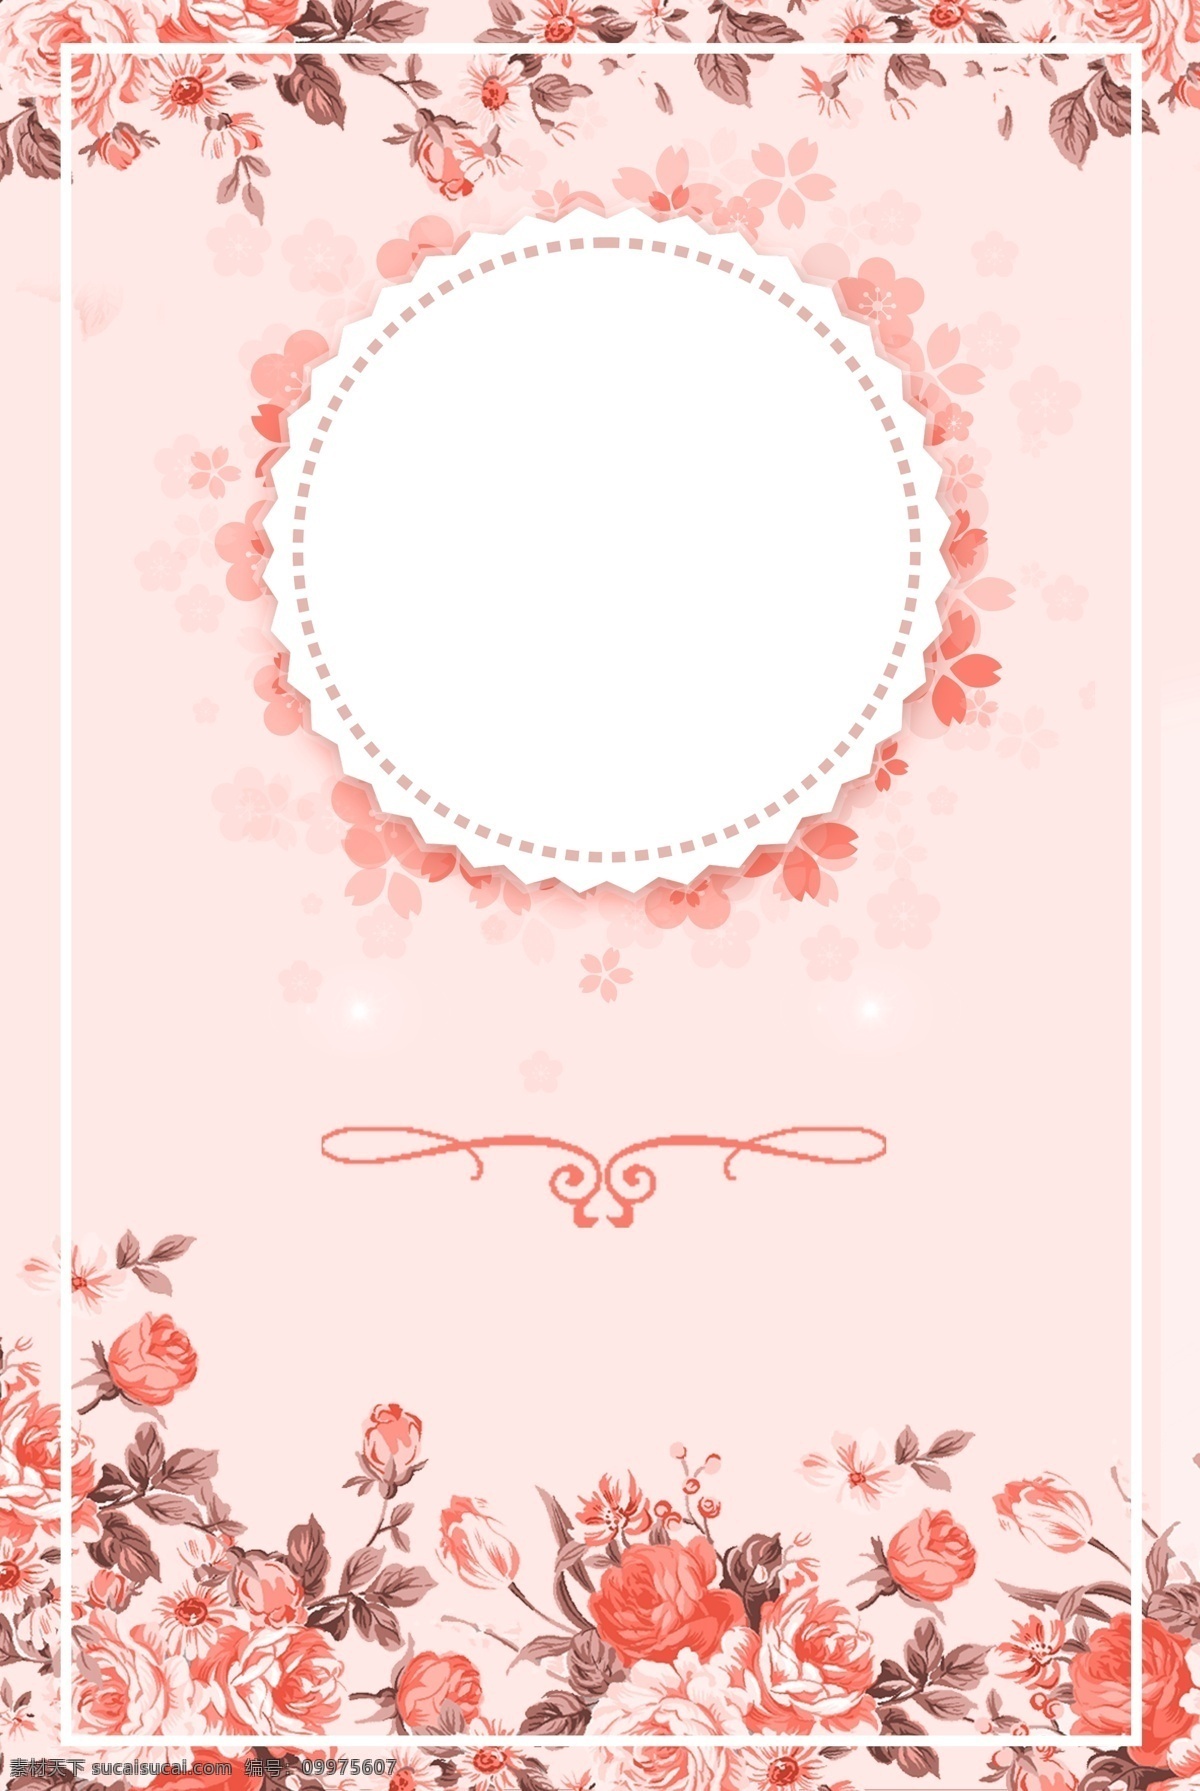 粉色 花卉 女神 节 海报 背景 温馨 文艺 清新 卡通 质感 纹理 手绘 女神节 边框